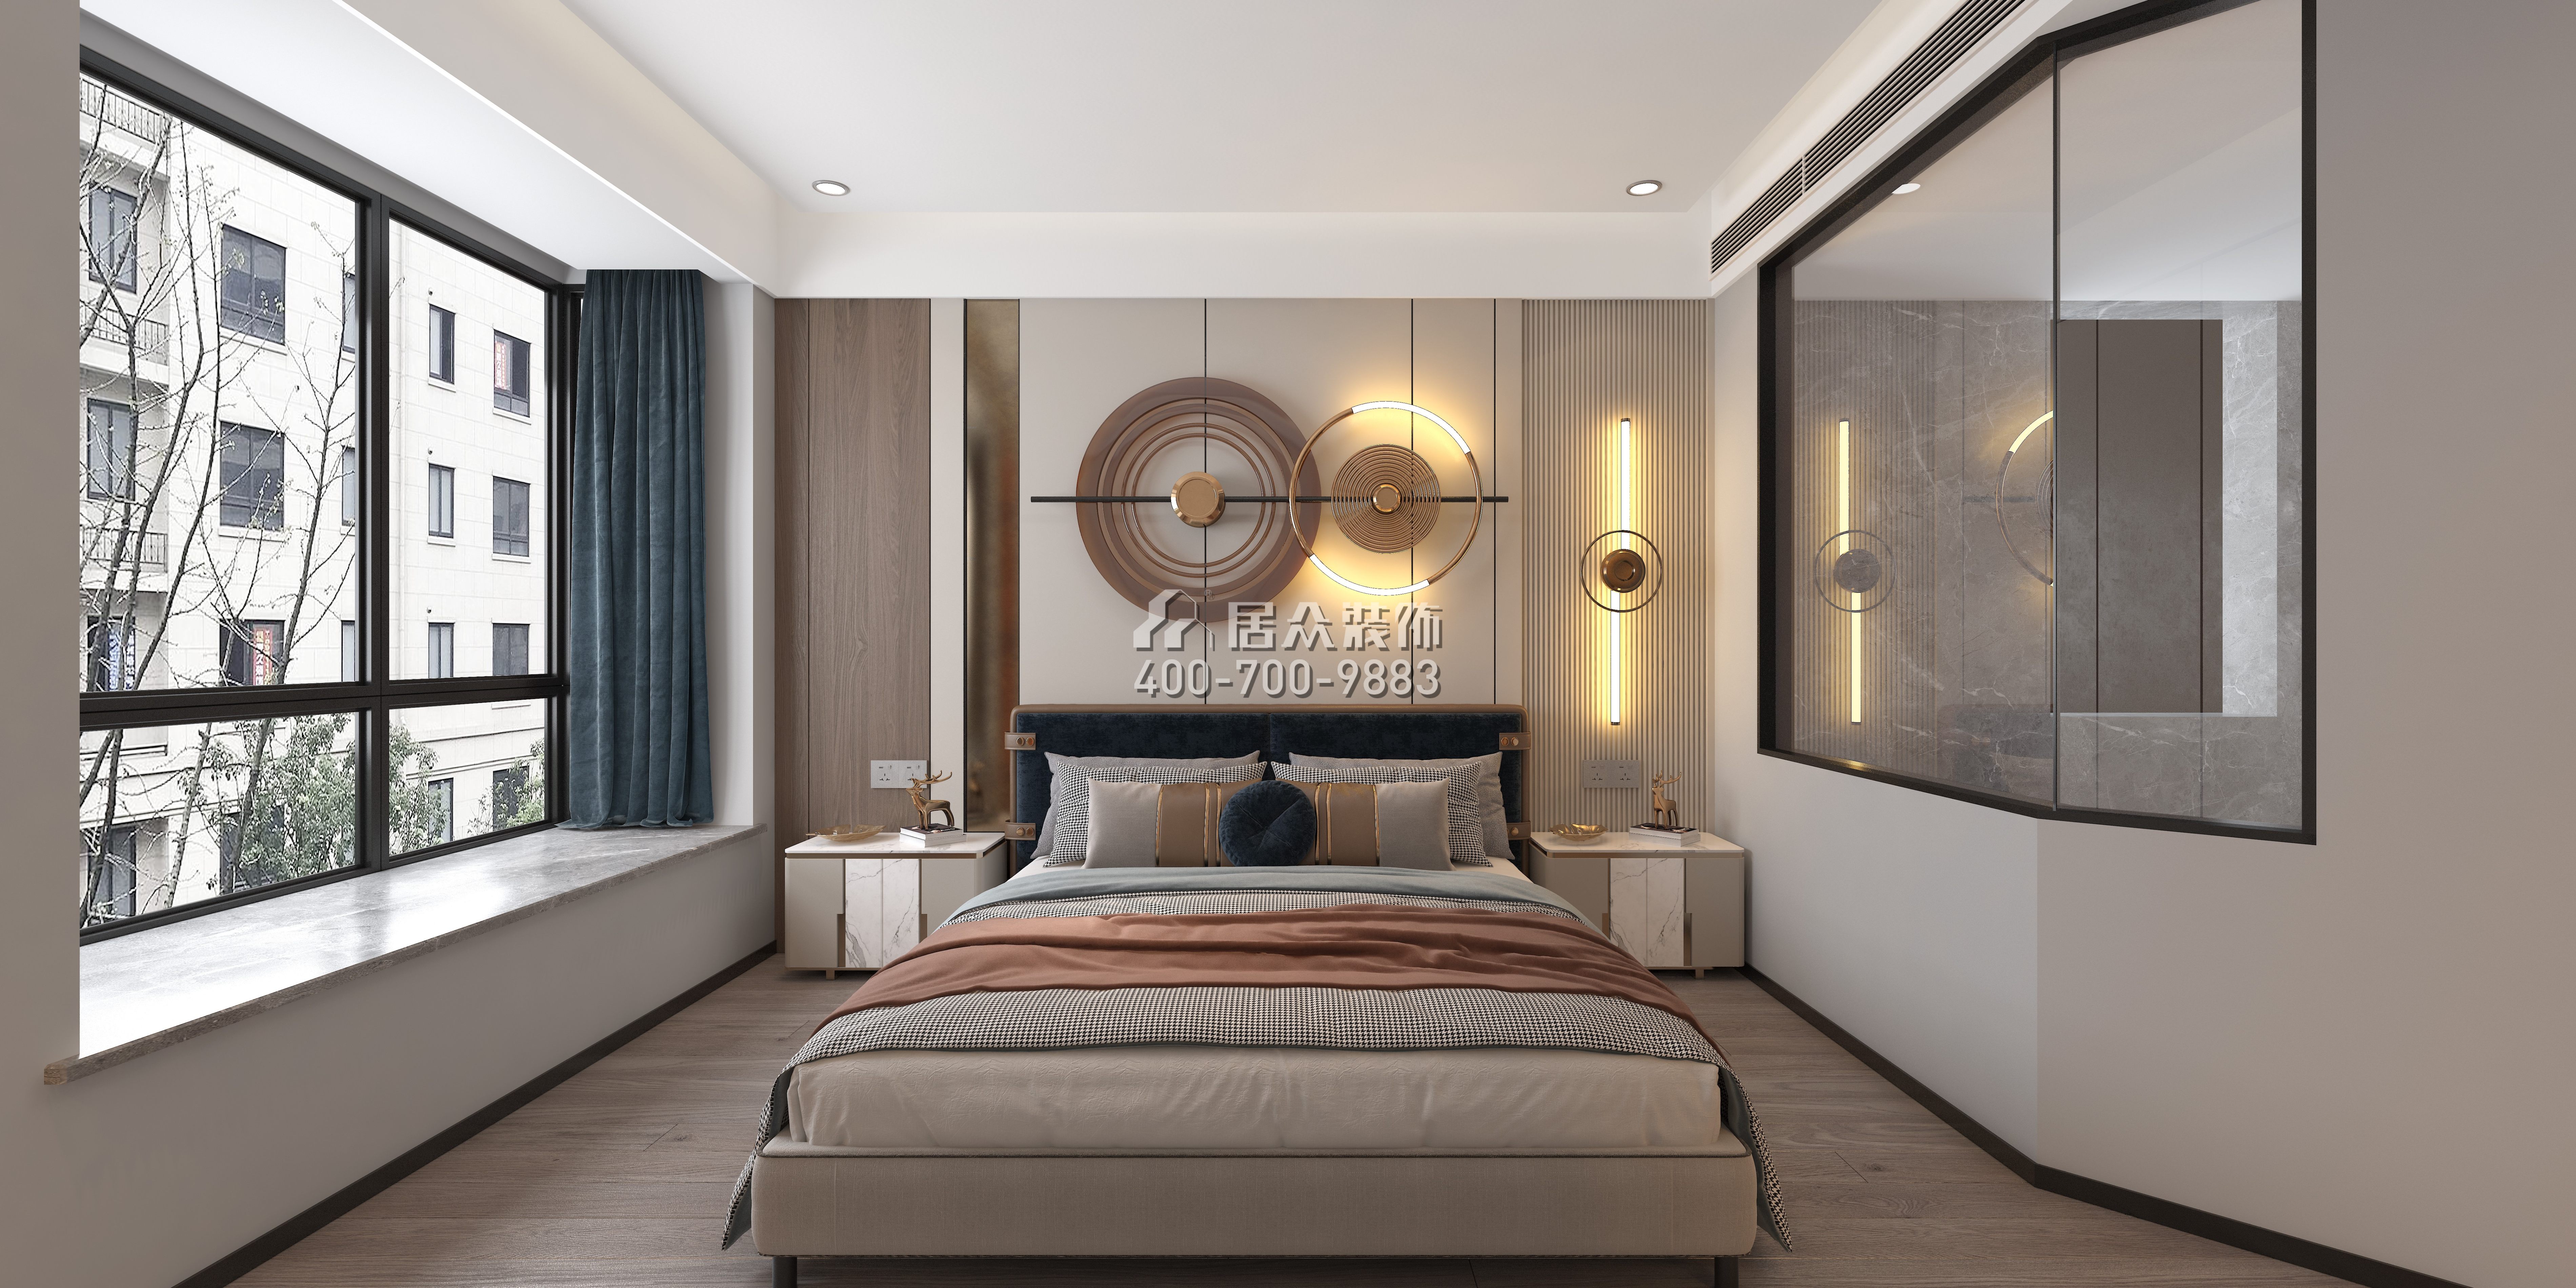 金水湾140平方米现代简约风格平层户型卧室装修效果图